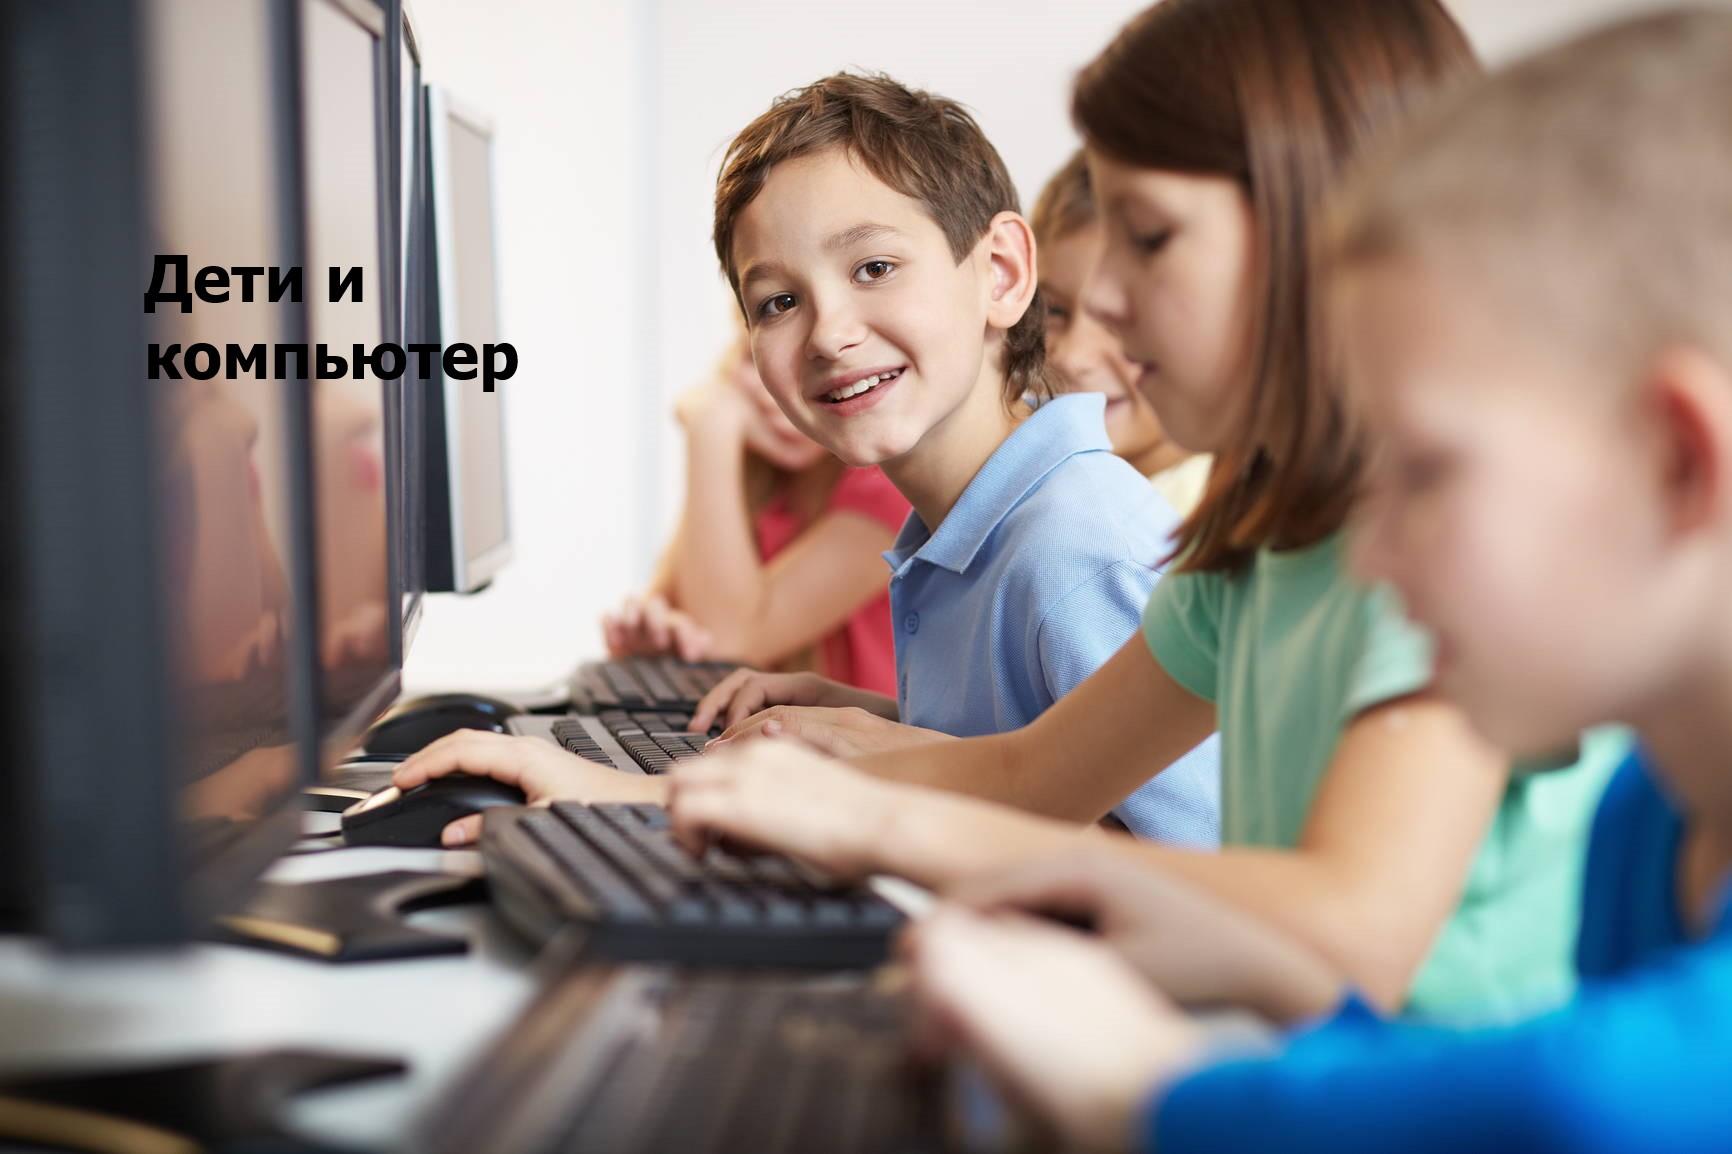 Волонтер компьютер. Компьютер для детей. Ребенок за компьютером. Подросток за компьютером. Подросток и компьютер.